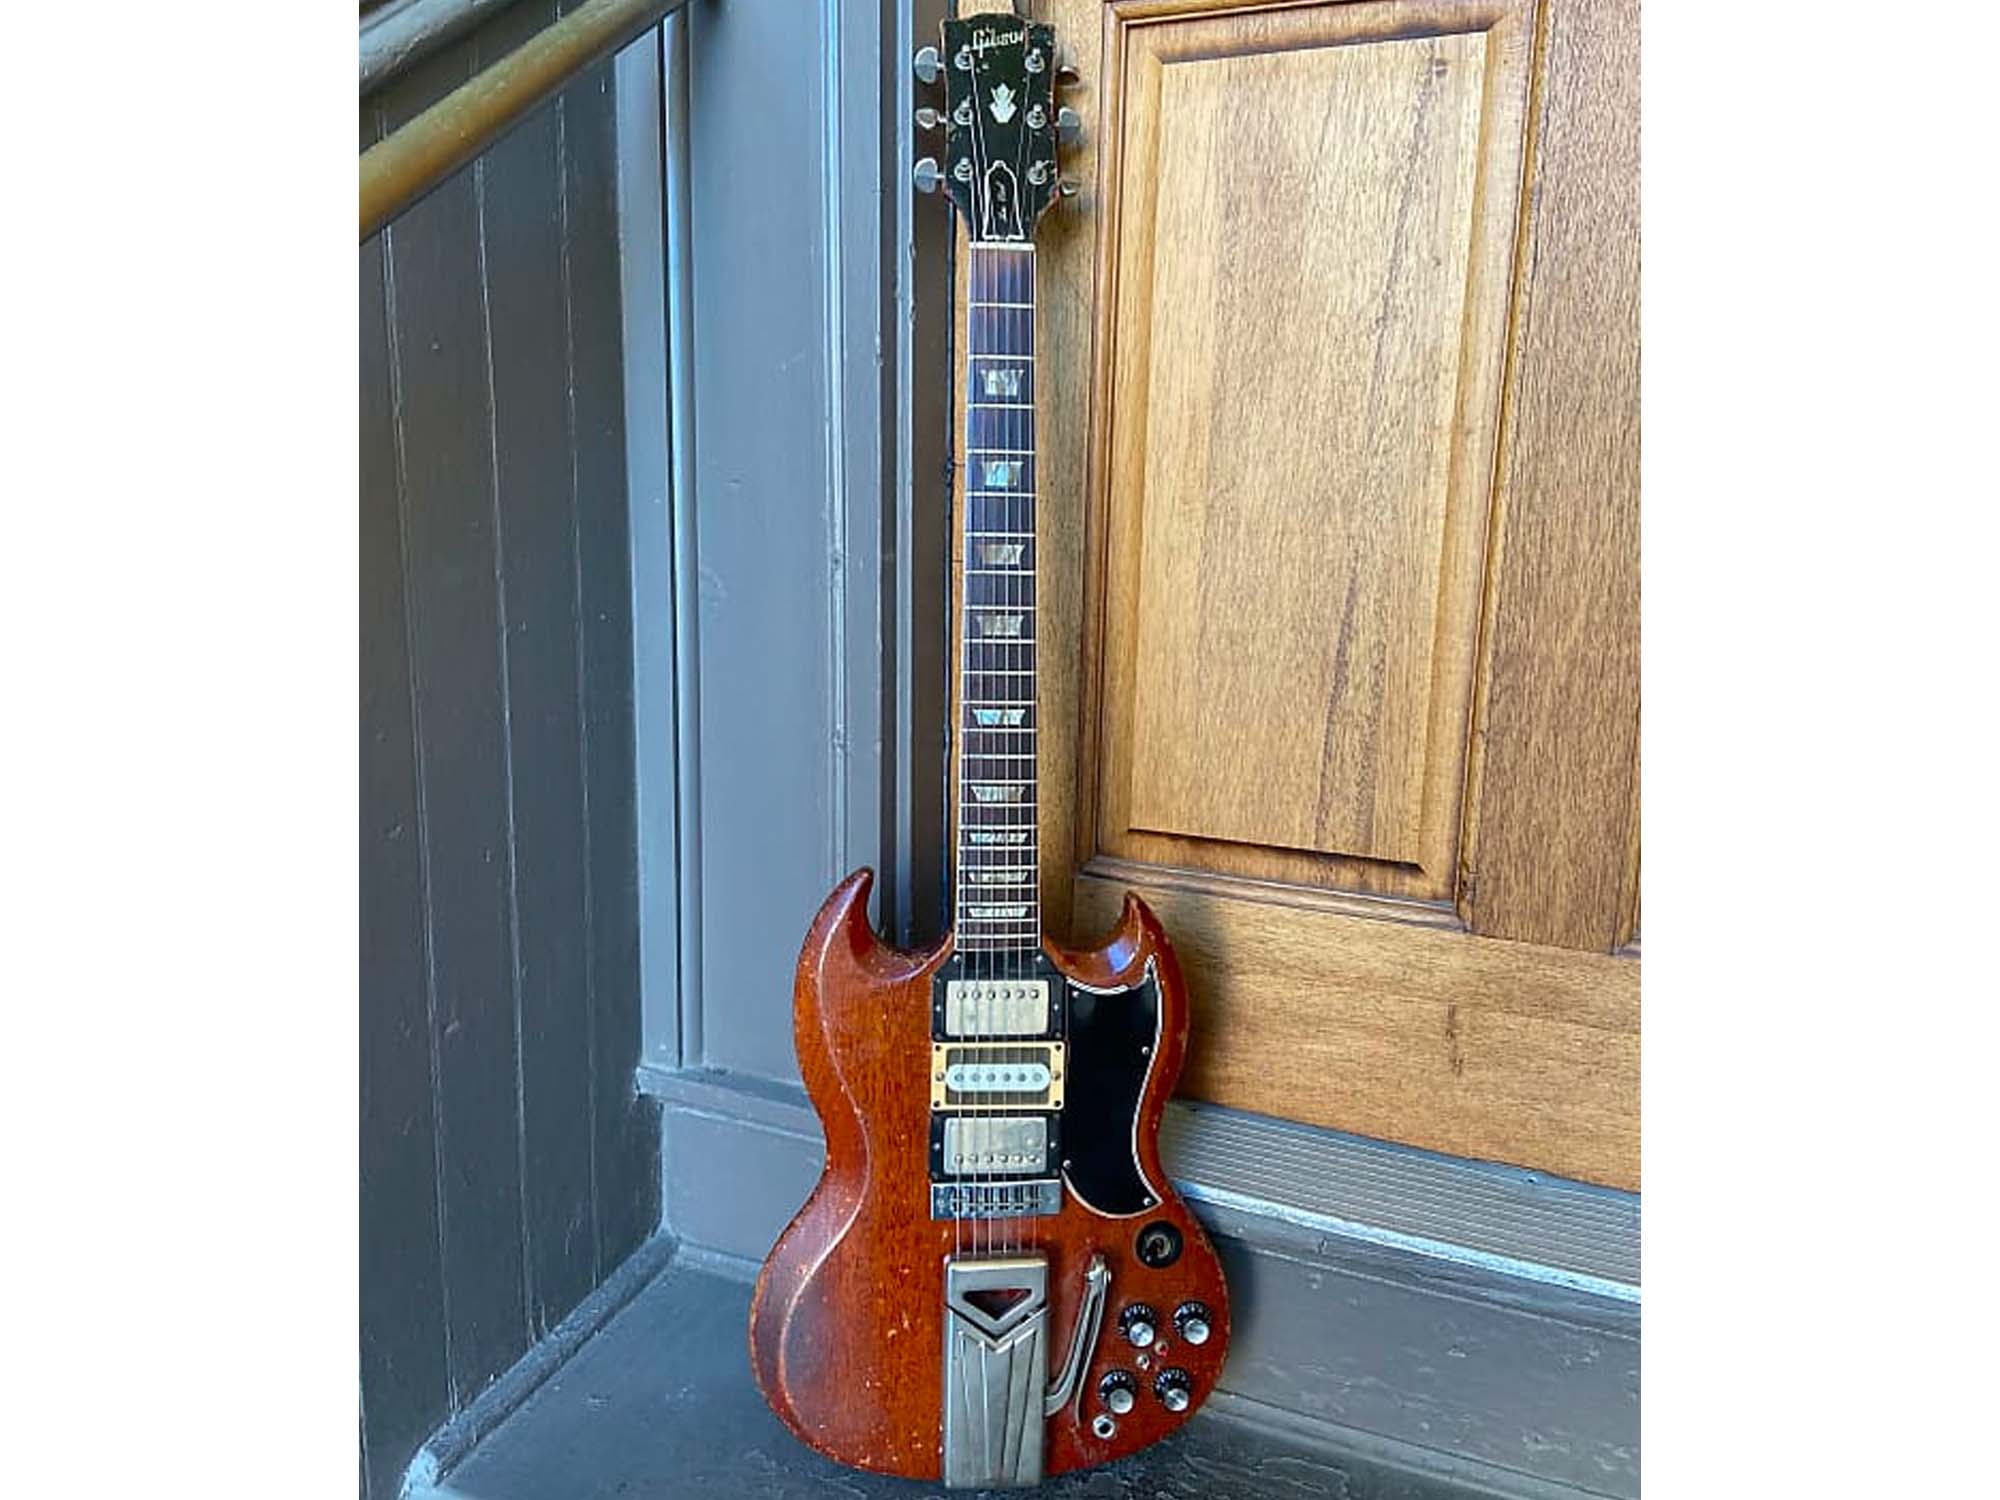 Gibson SG 60s